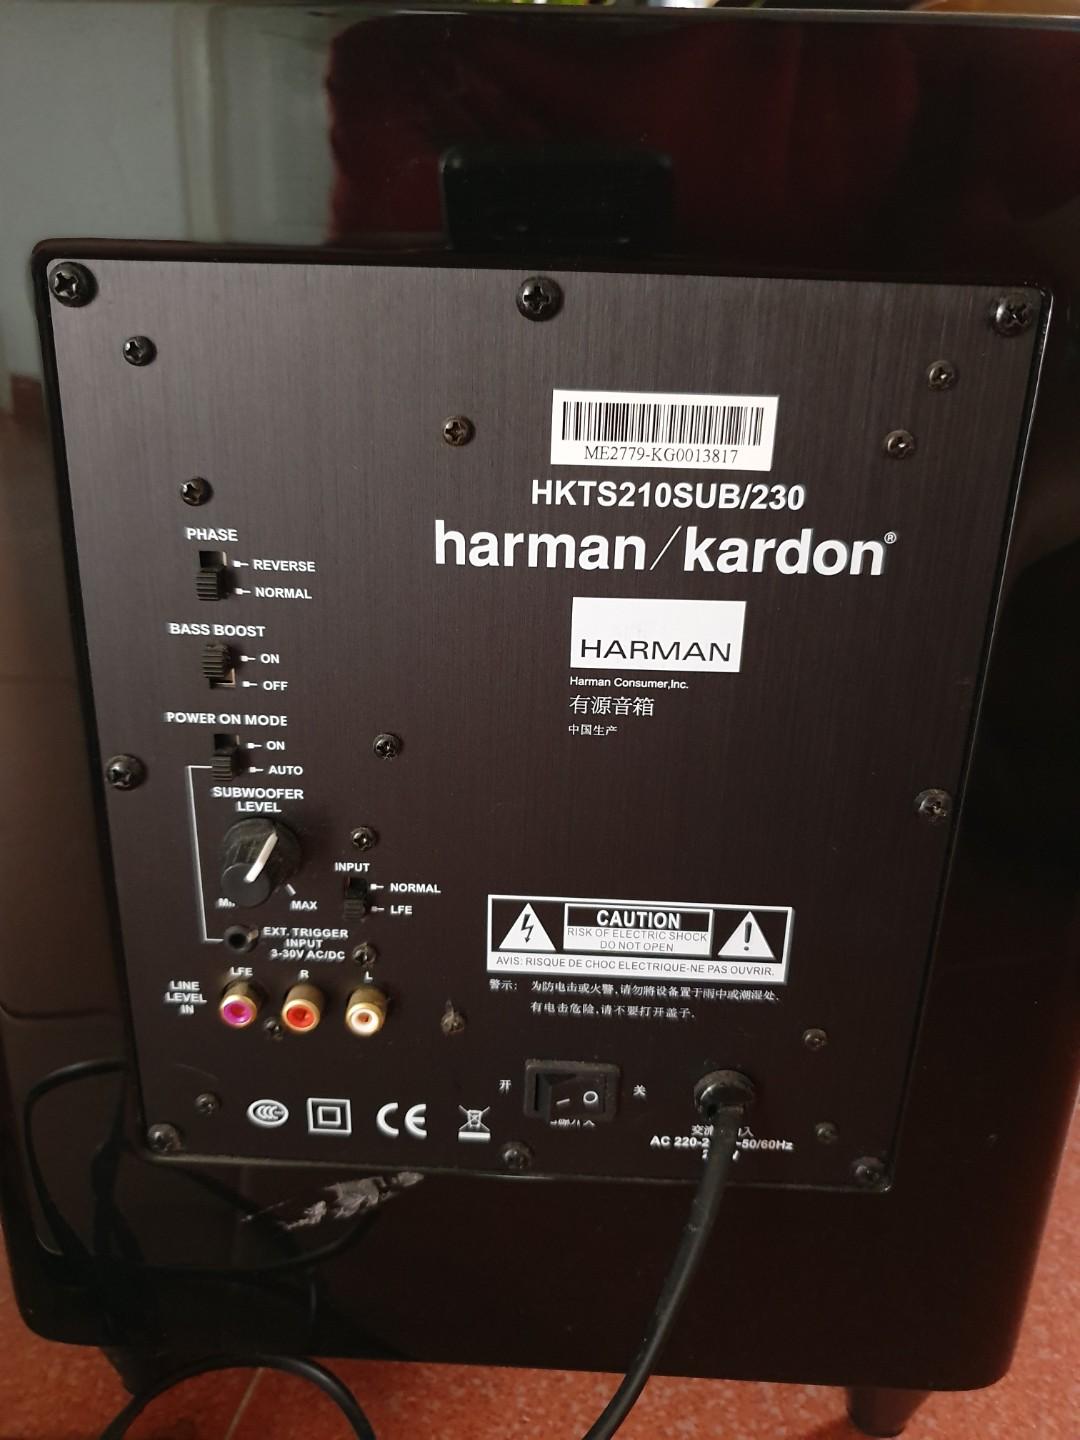 Harman Kardon Subwoofer - HKTS210SUB/230, Soundbars, Speakers & Amplifiers on Carousell